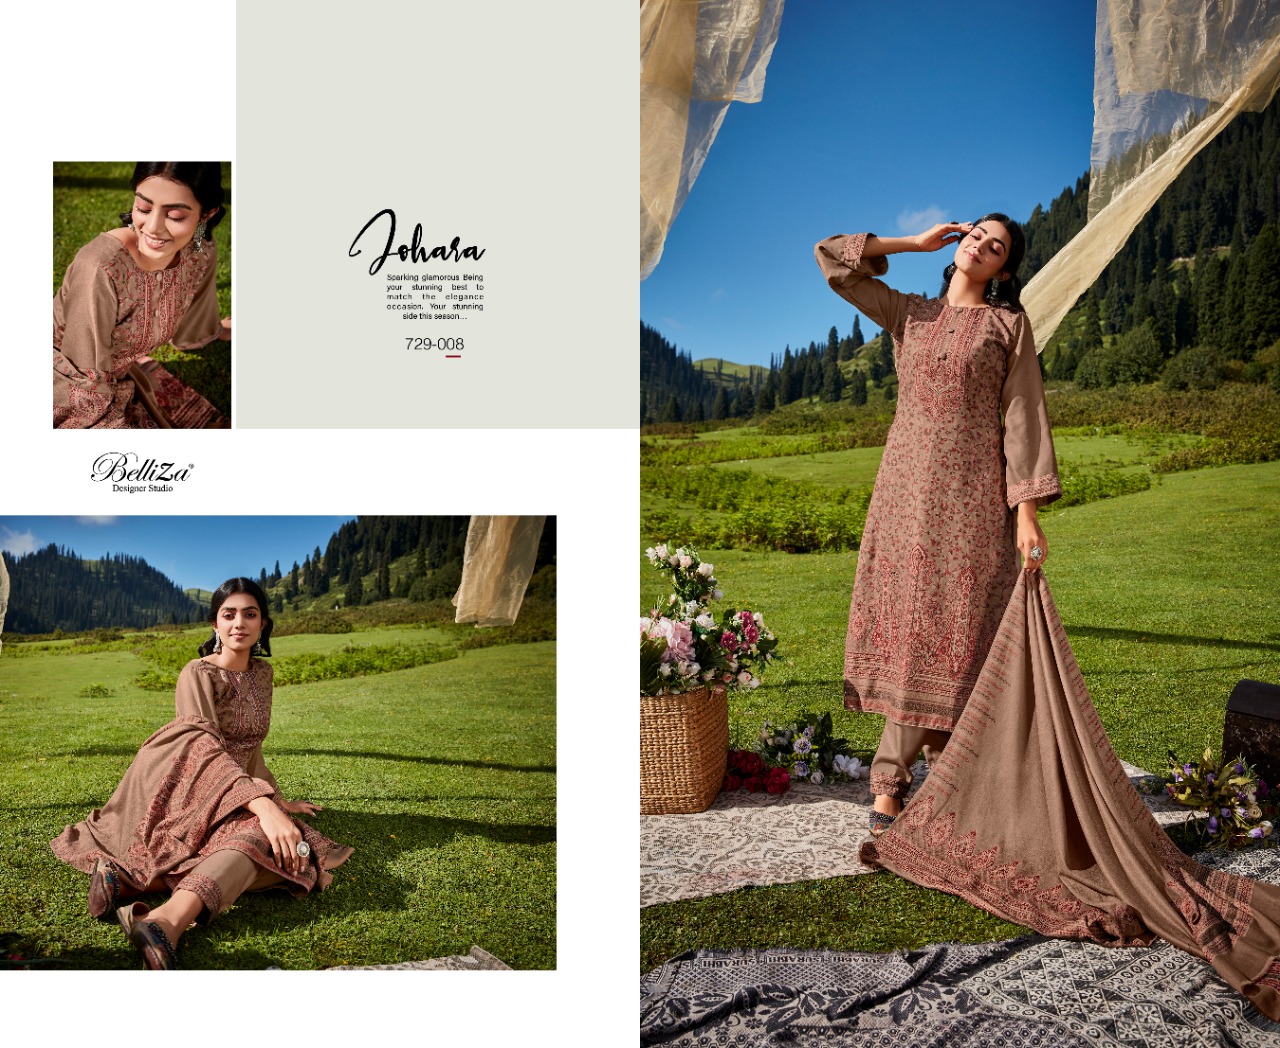 belliza designer studio faariah pashmina regal look salwar suit catalog